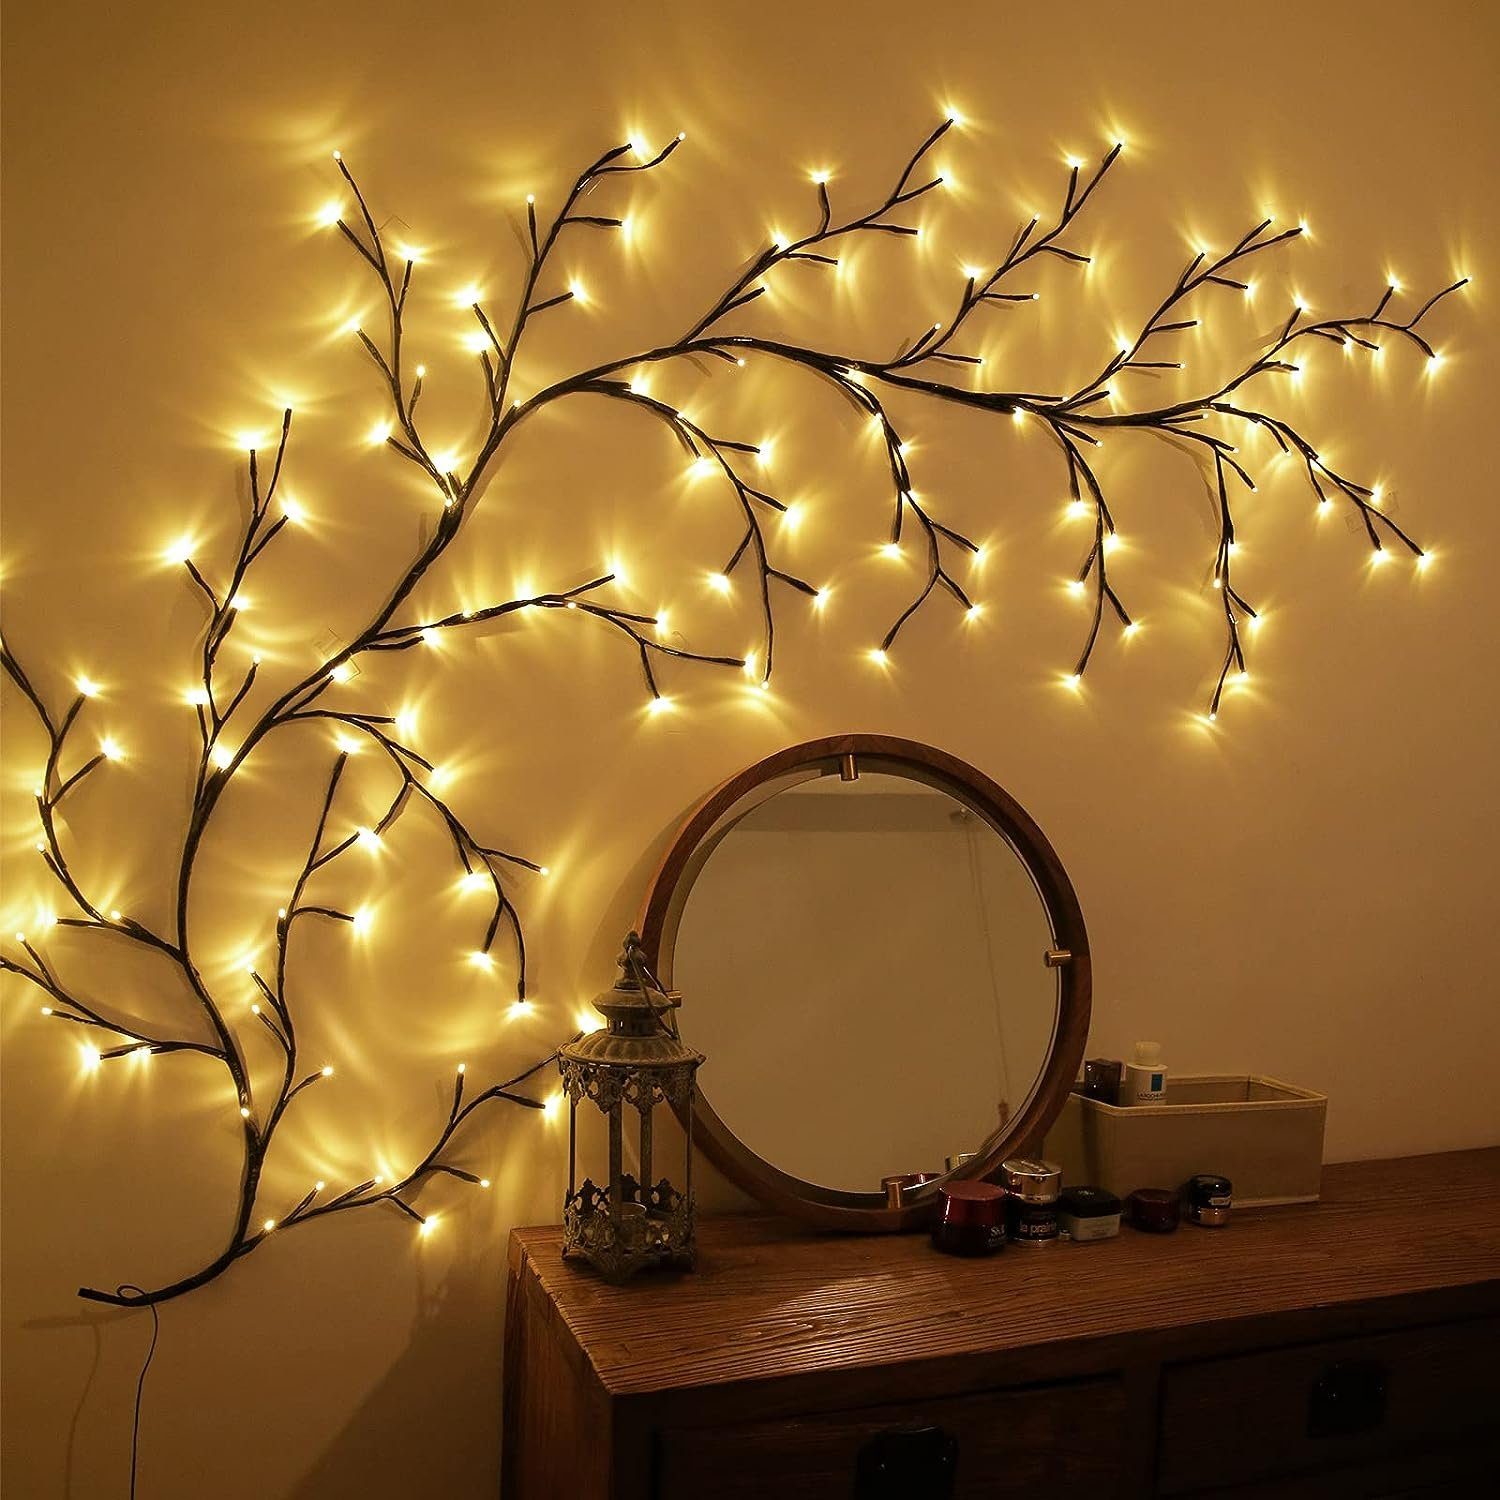 Ciskotu LED Baum Lichterkette LED Weidenrebe Biegbare Willow Lichter Baum Vine,144